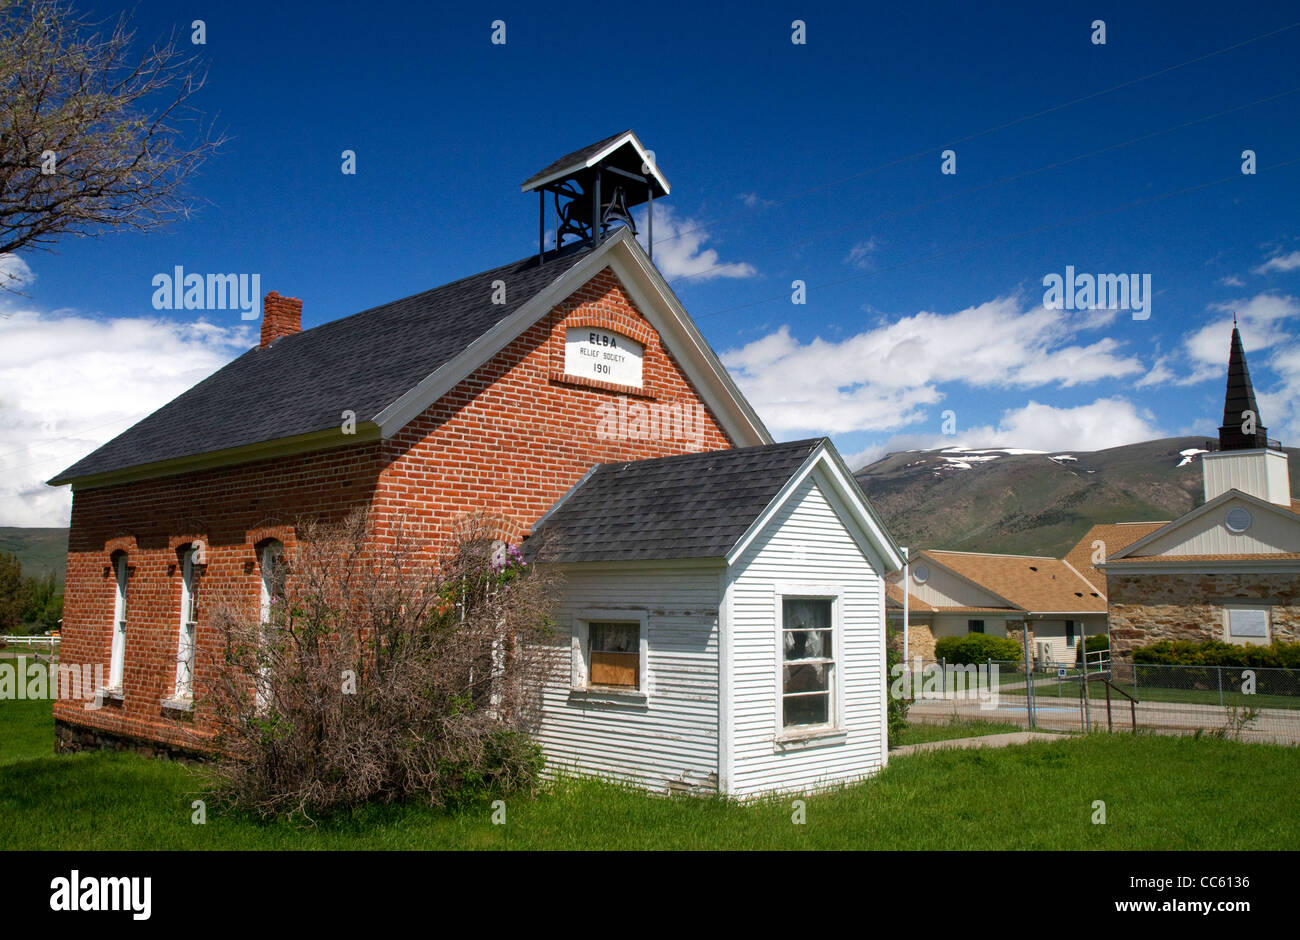 Elba Relief Society edificio situado en el condado de Cassia, Idaho, USA. Foto de stock